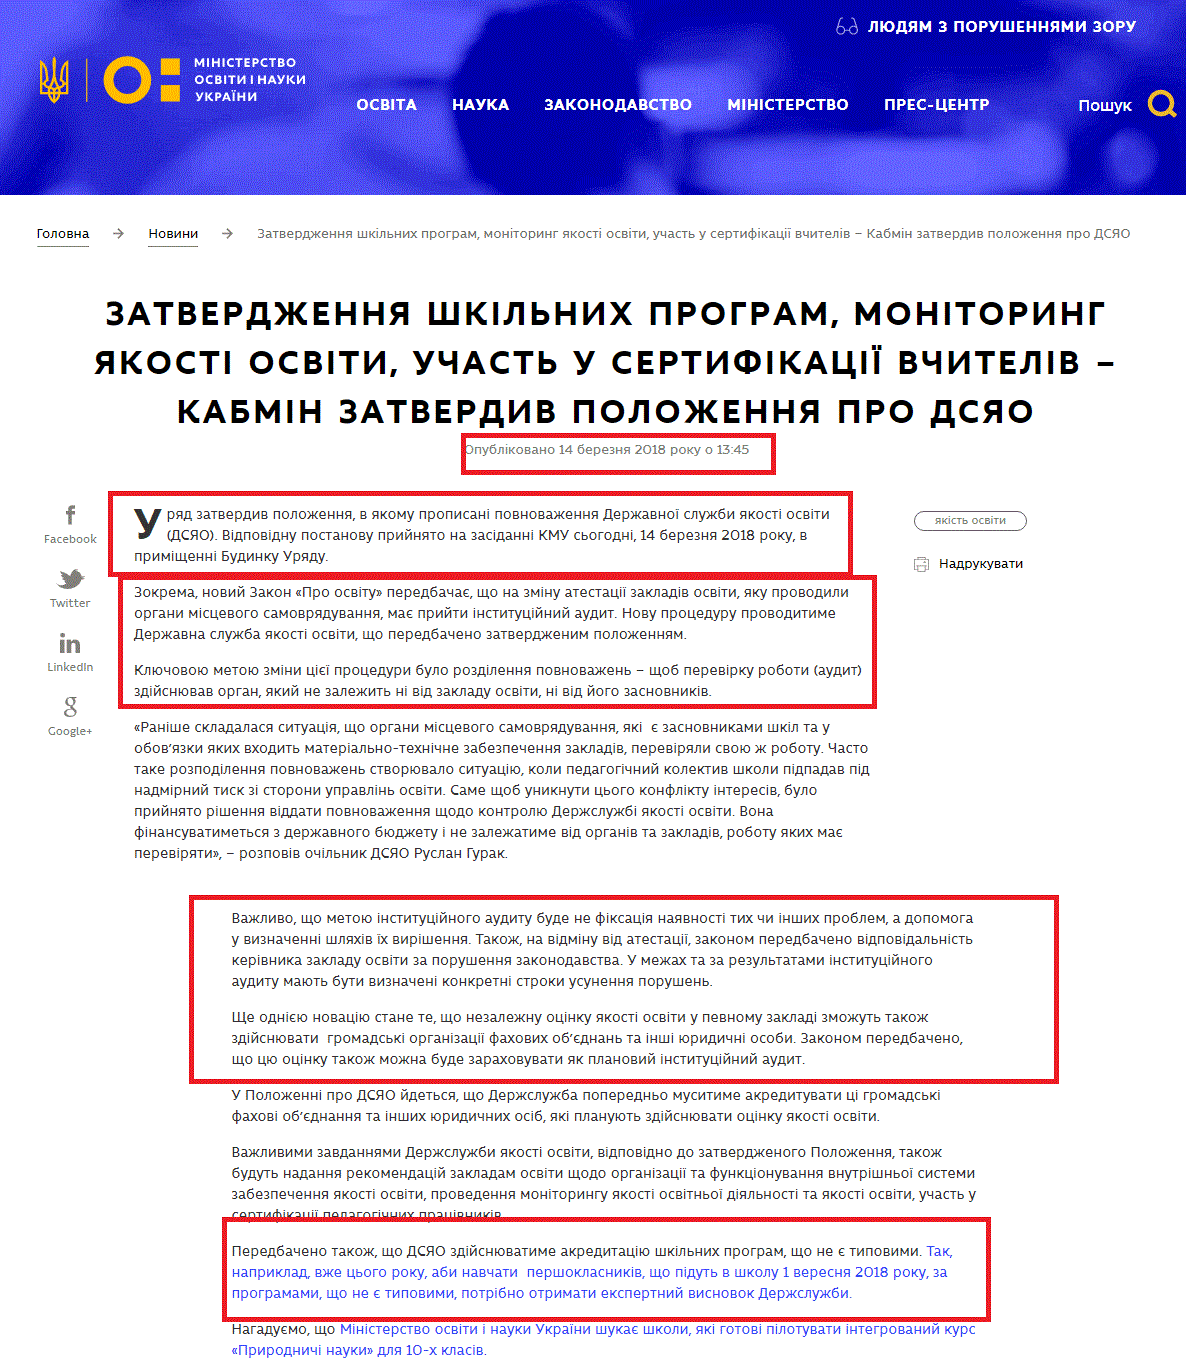 https://mon.gov.ua/ua/news/zatverdzhennya-shkilnih-program-monitoring-yakosti-osviti-uchast-u-sertifikaciyi-vchiteliv-kabmin-zatverdiv-polozhennya-pro-dsyao